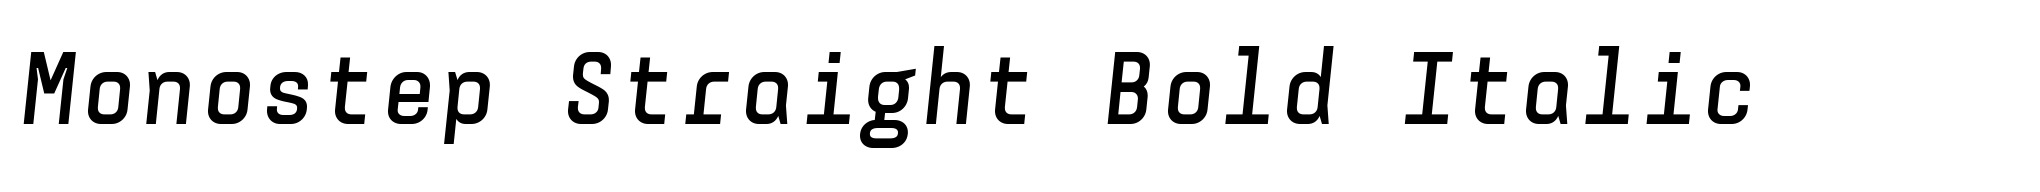 Monostep Straight Bold Italic image